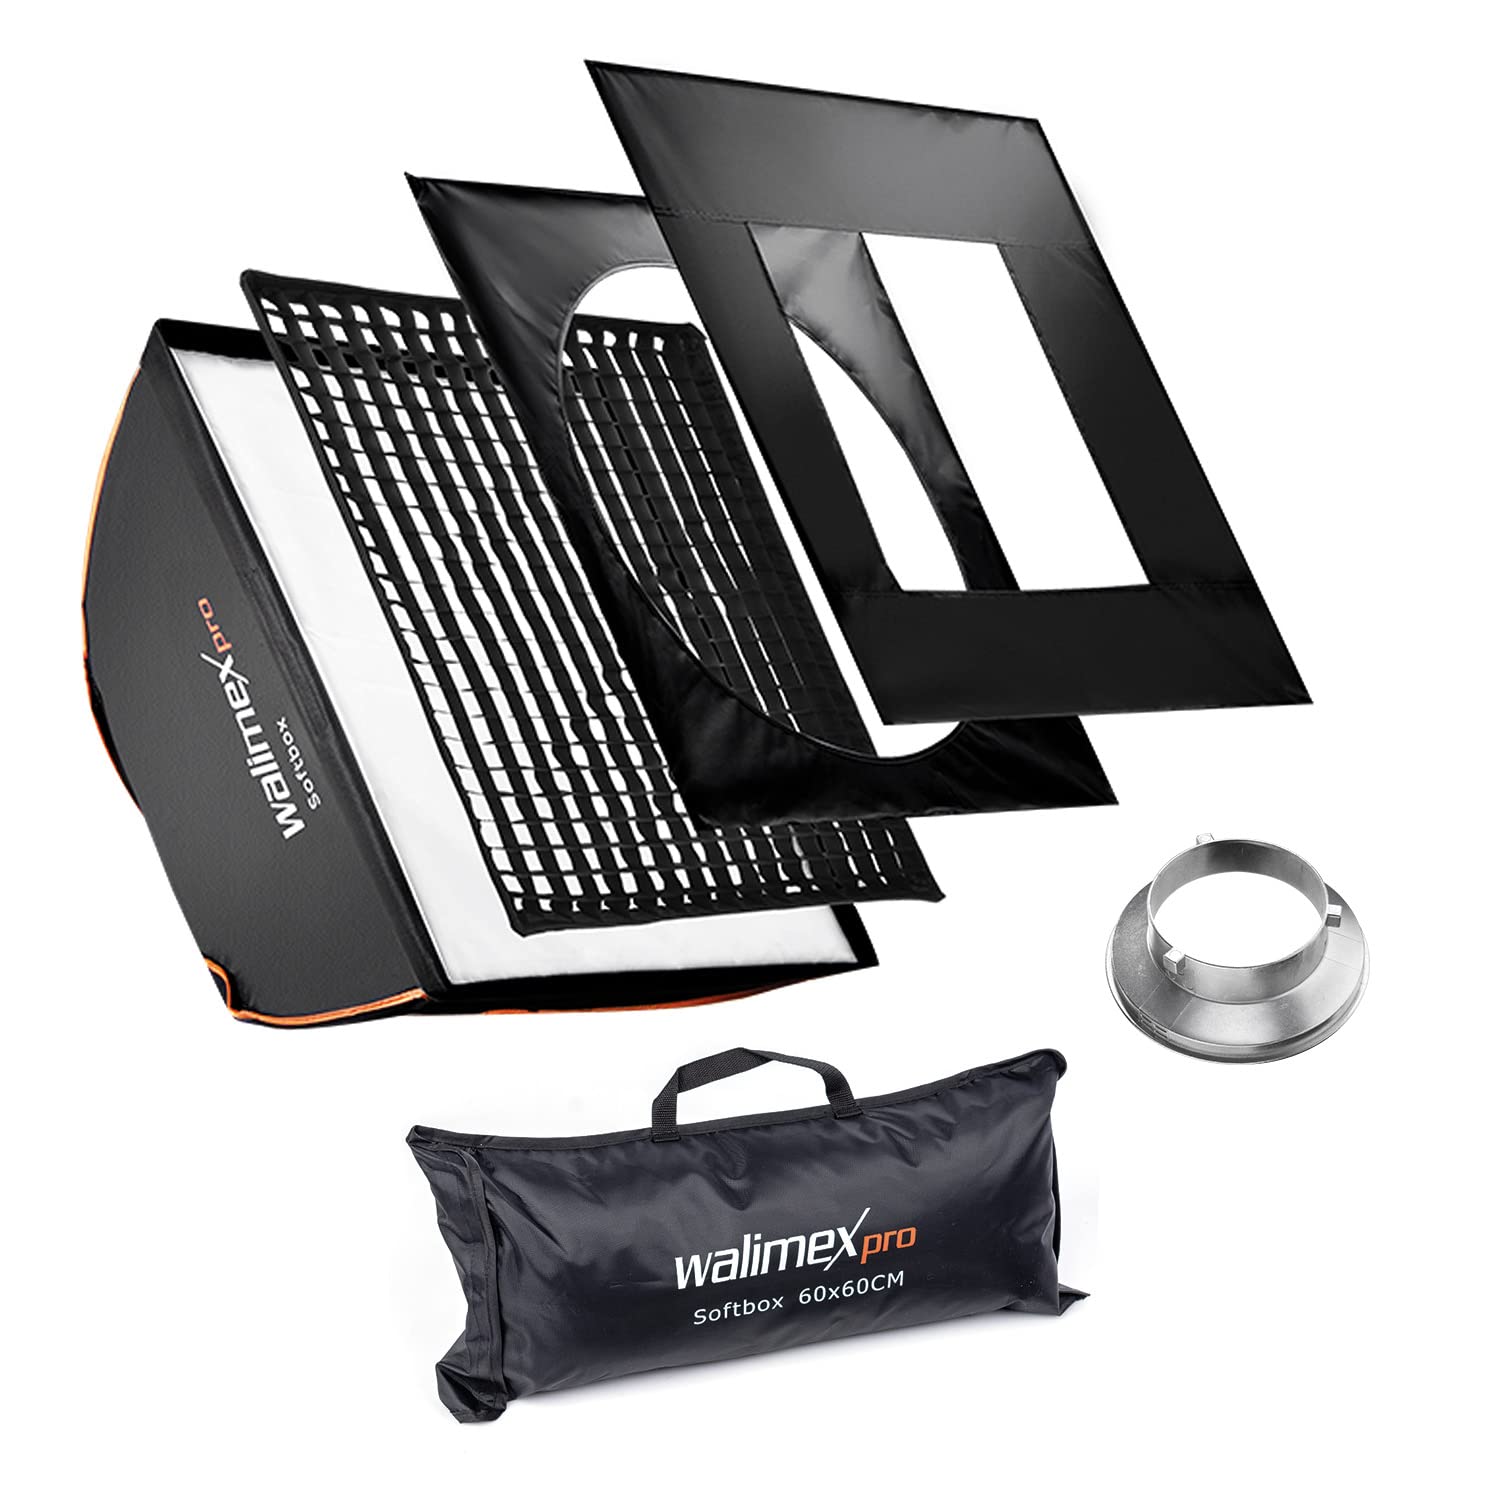 Walimex pro Softbox mit Gitter 60x60cm I Inkl Aurora Bowens Adapter 3cm Grid Masken Diffusor Lichtformer 360° drehbar hitzeresistent I Ideal für Produktfotografie, Fotolicht für Unterwegs & im Studio